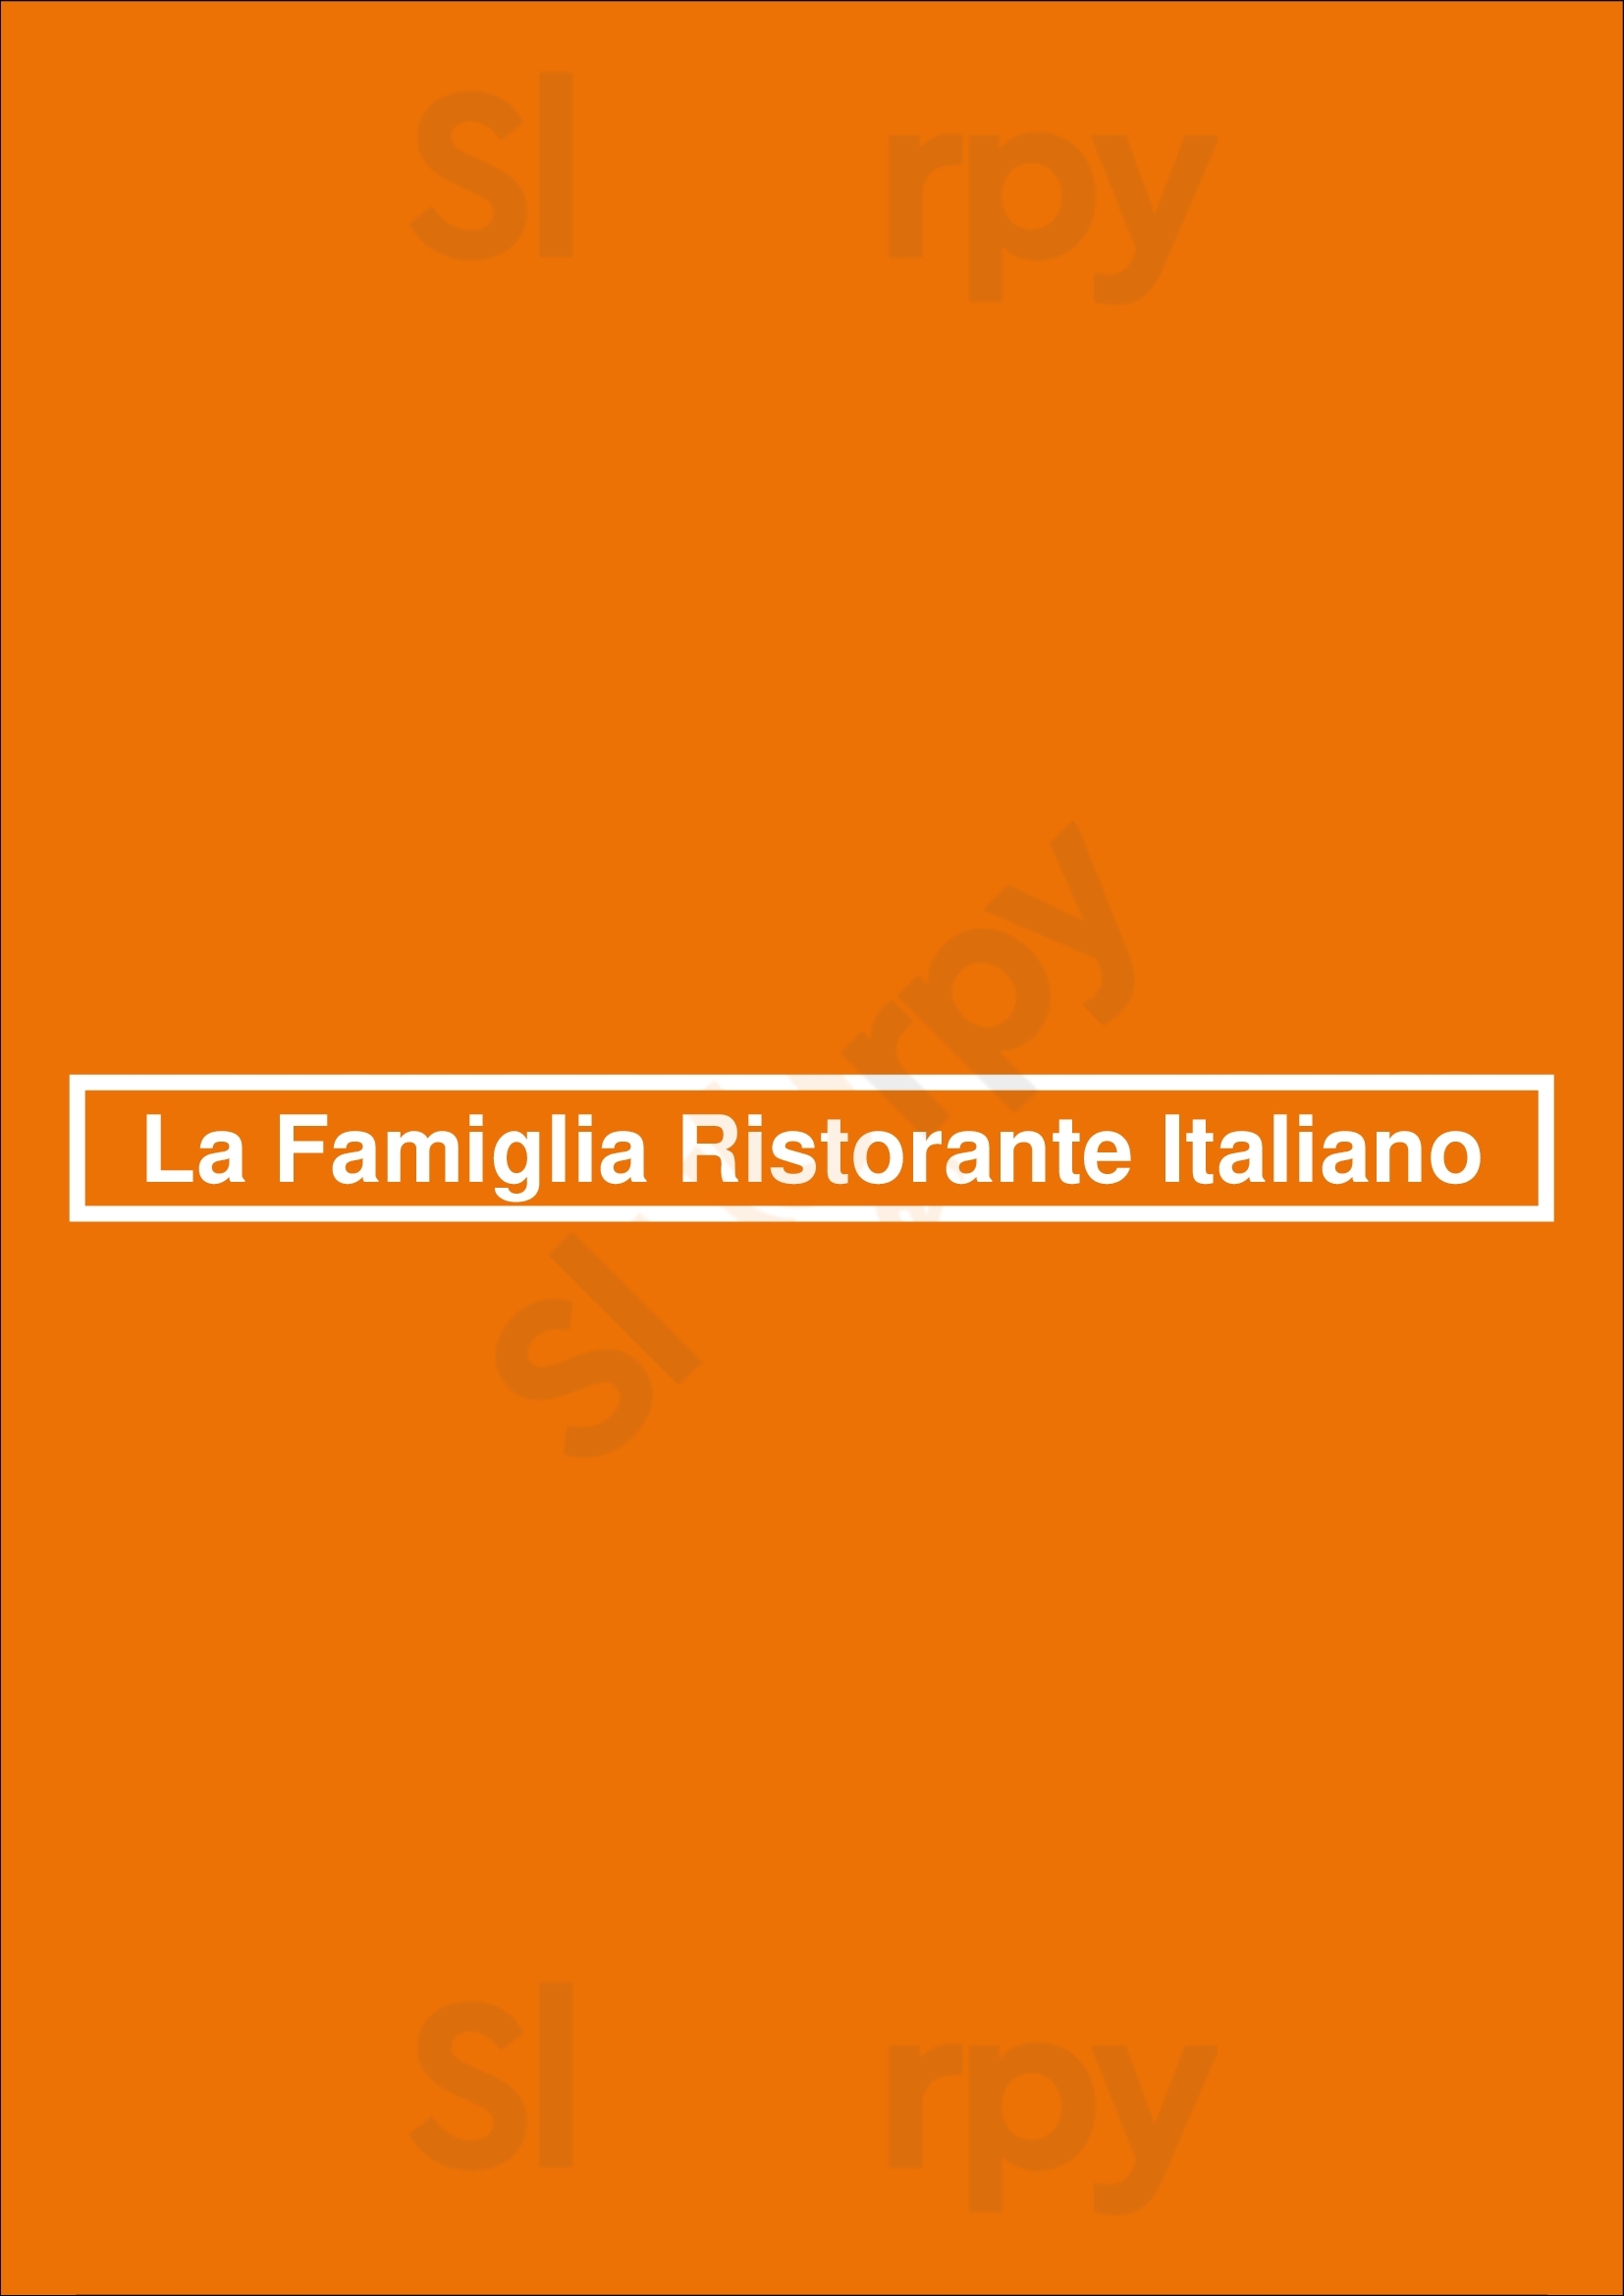 La Famiglia Ristorante Italiano Reno Menu - 1